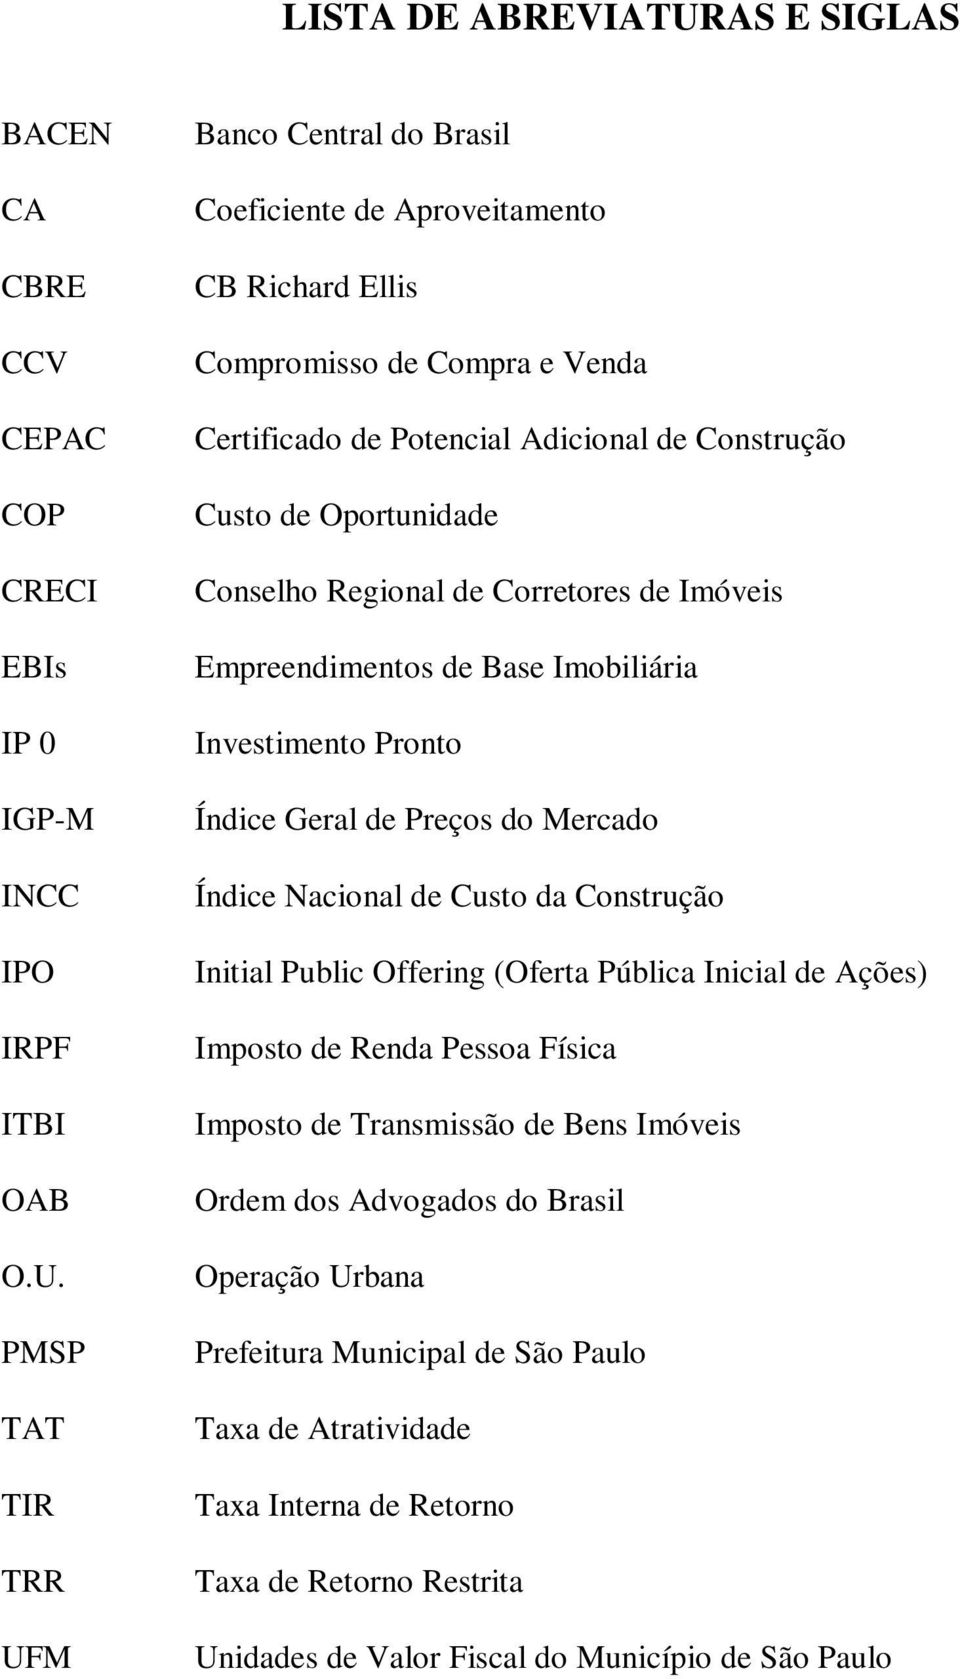 PMSP TAT TIR TRR UFM Banco Central do Brasil Coeficiente de Aproveitamento CB Richard Ellis Compromisso de Compra e Venda Certificado de Potencial Adicional de Construção Custo de Oportunidade